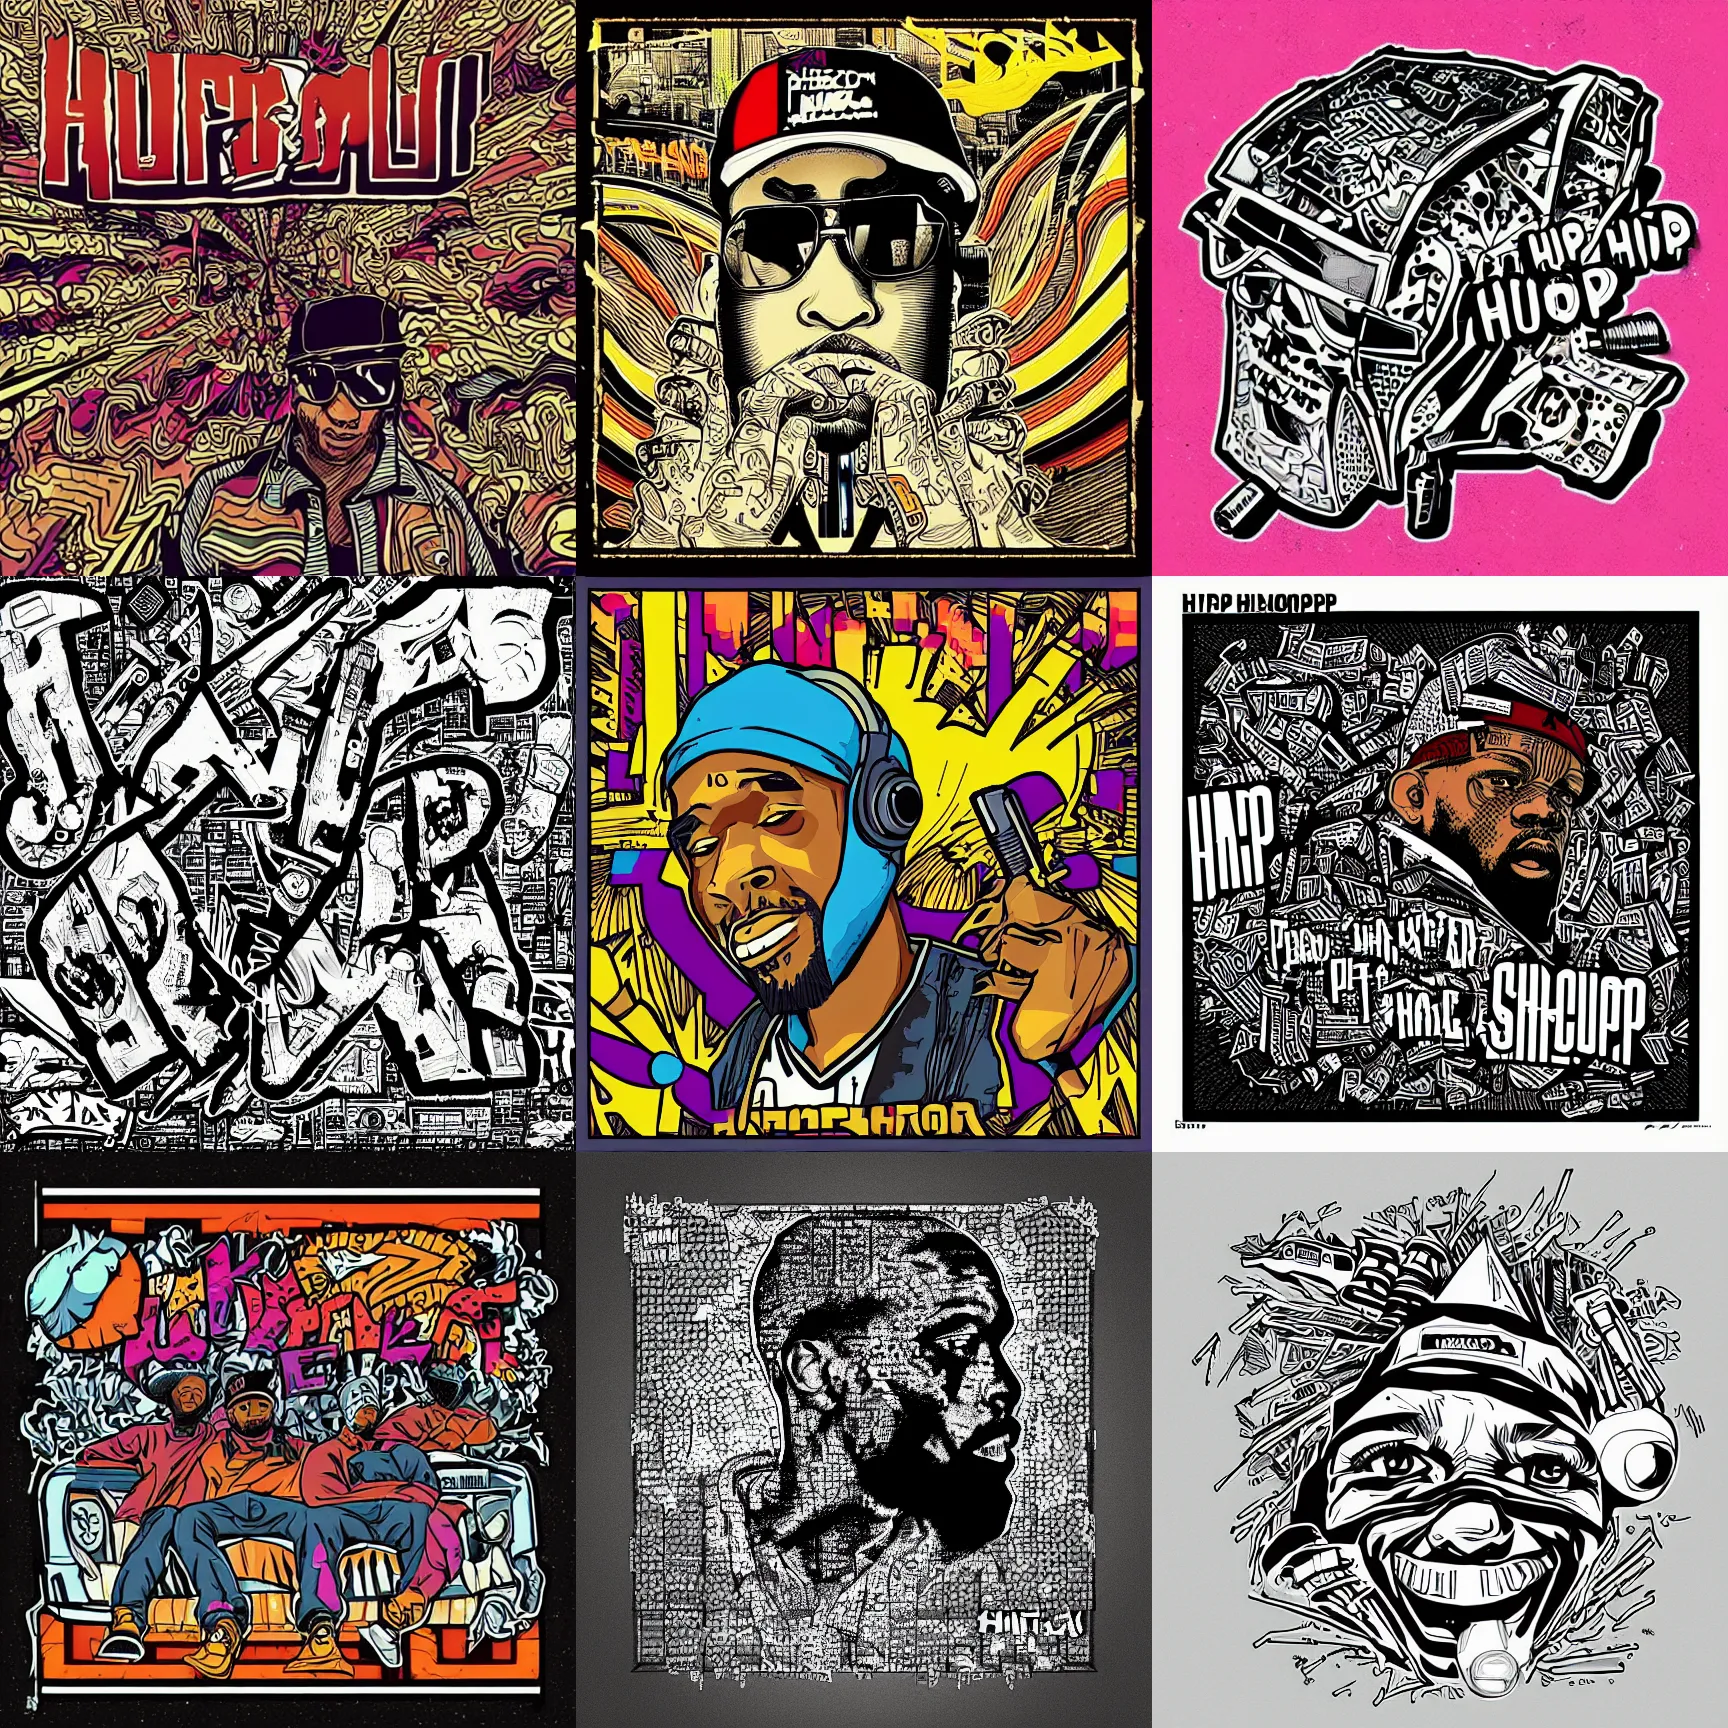 Prompt: hip - hop album art cover, pen & pixel style